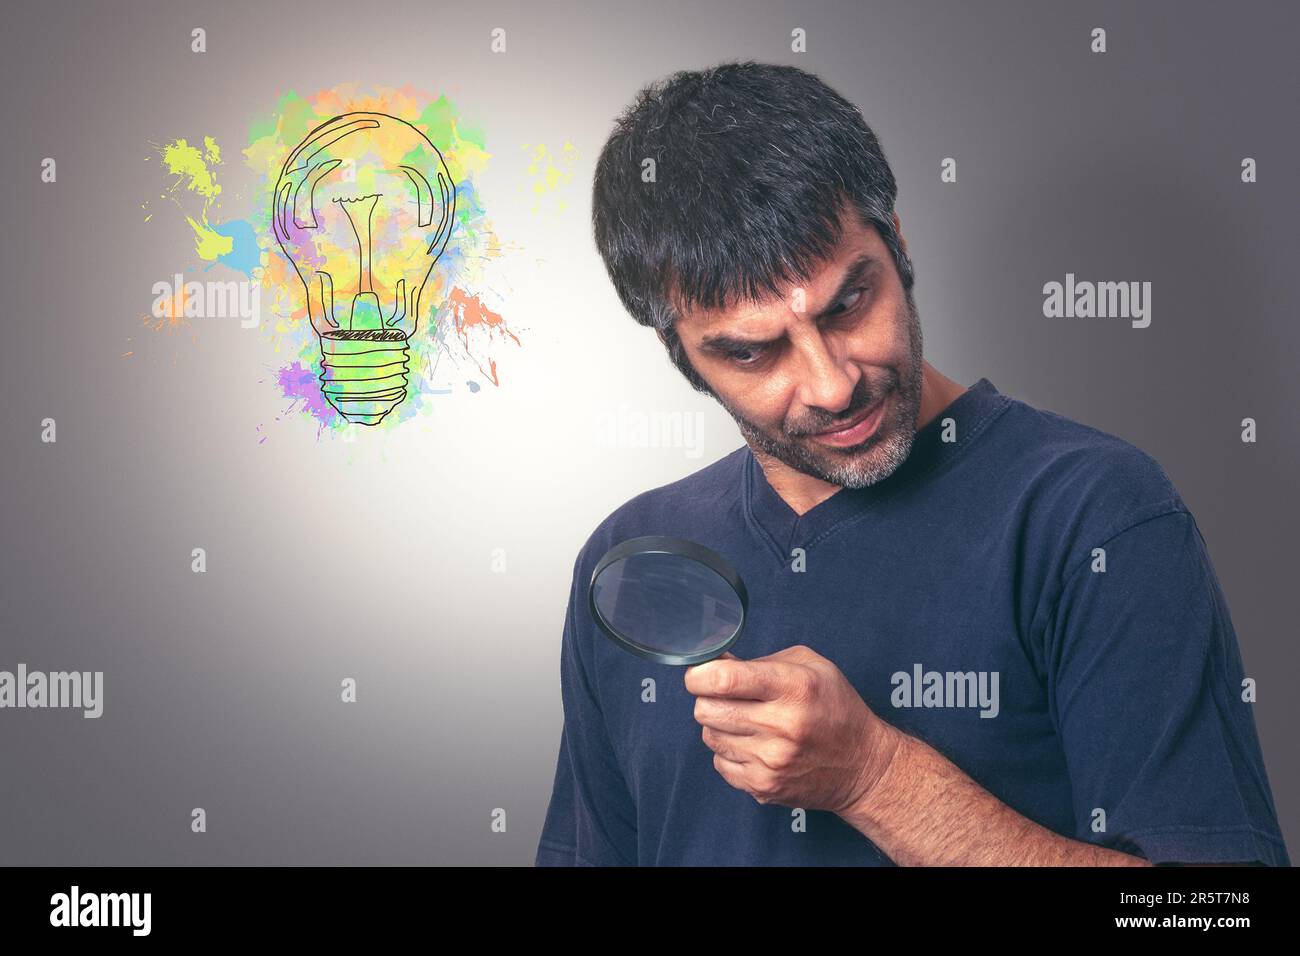 Ein Mann mittleren Alters mit dunklem Haar, der auf der Suche nach Ideen durch eine Lupe blickt, während eine lebendige abstrakte Glühbirne in einer Ecke blinkt, gegen einen Gramm Stockfoto